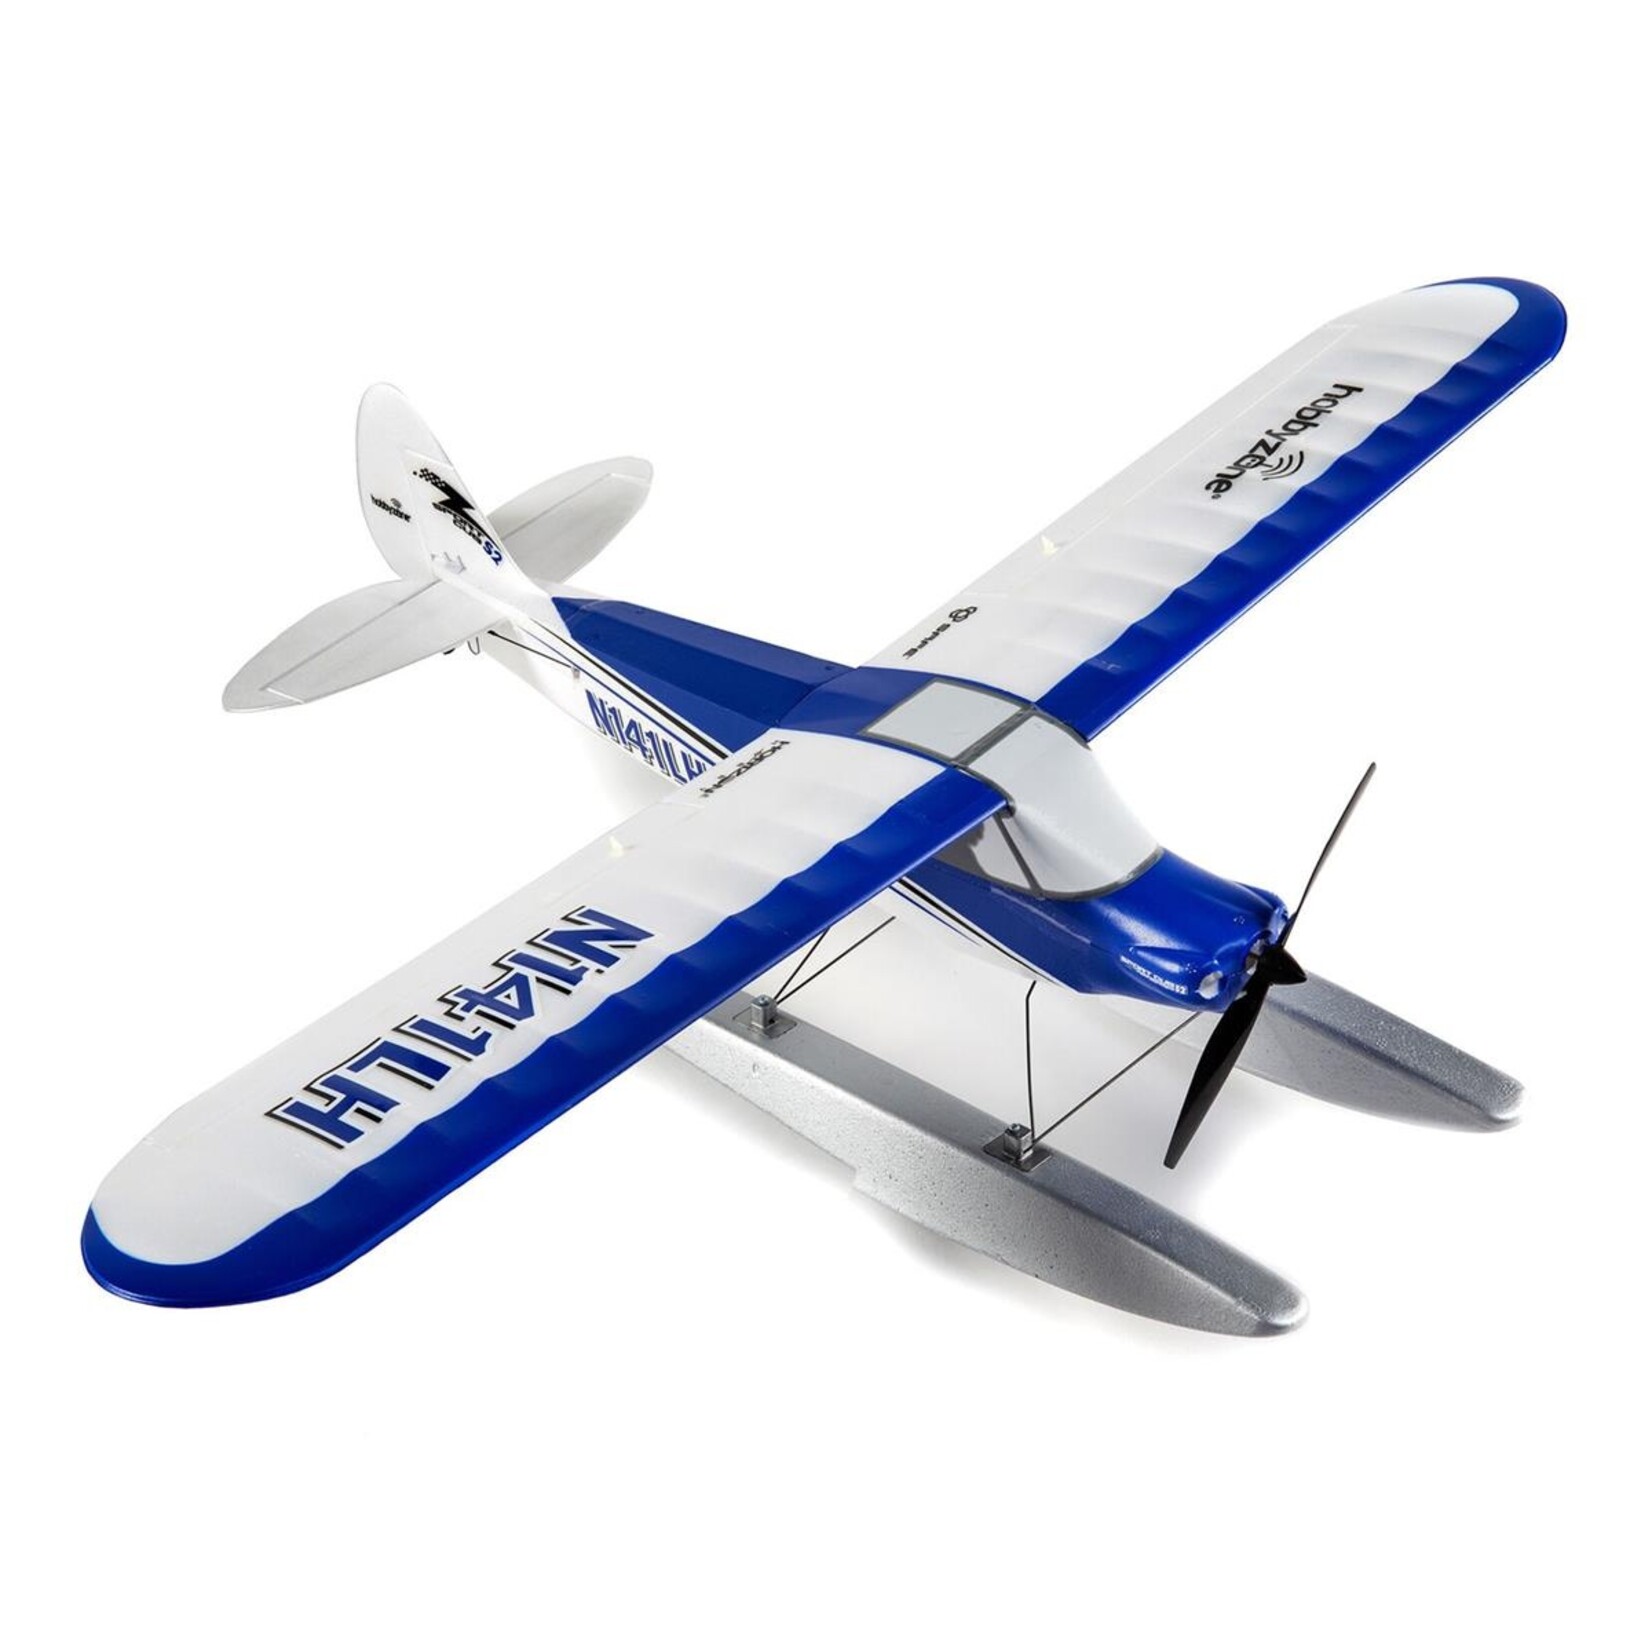 HobbyZone HobbyZone Sport Cub S 2 BNF Basic Electric Airplane w/SAFE (616mm) #HBZ44500